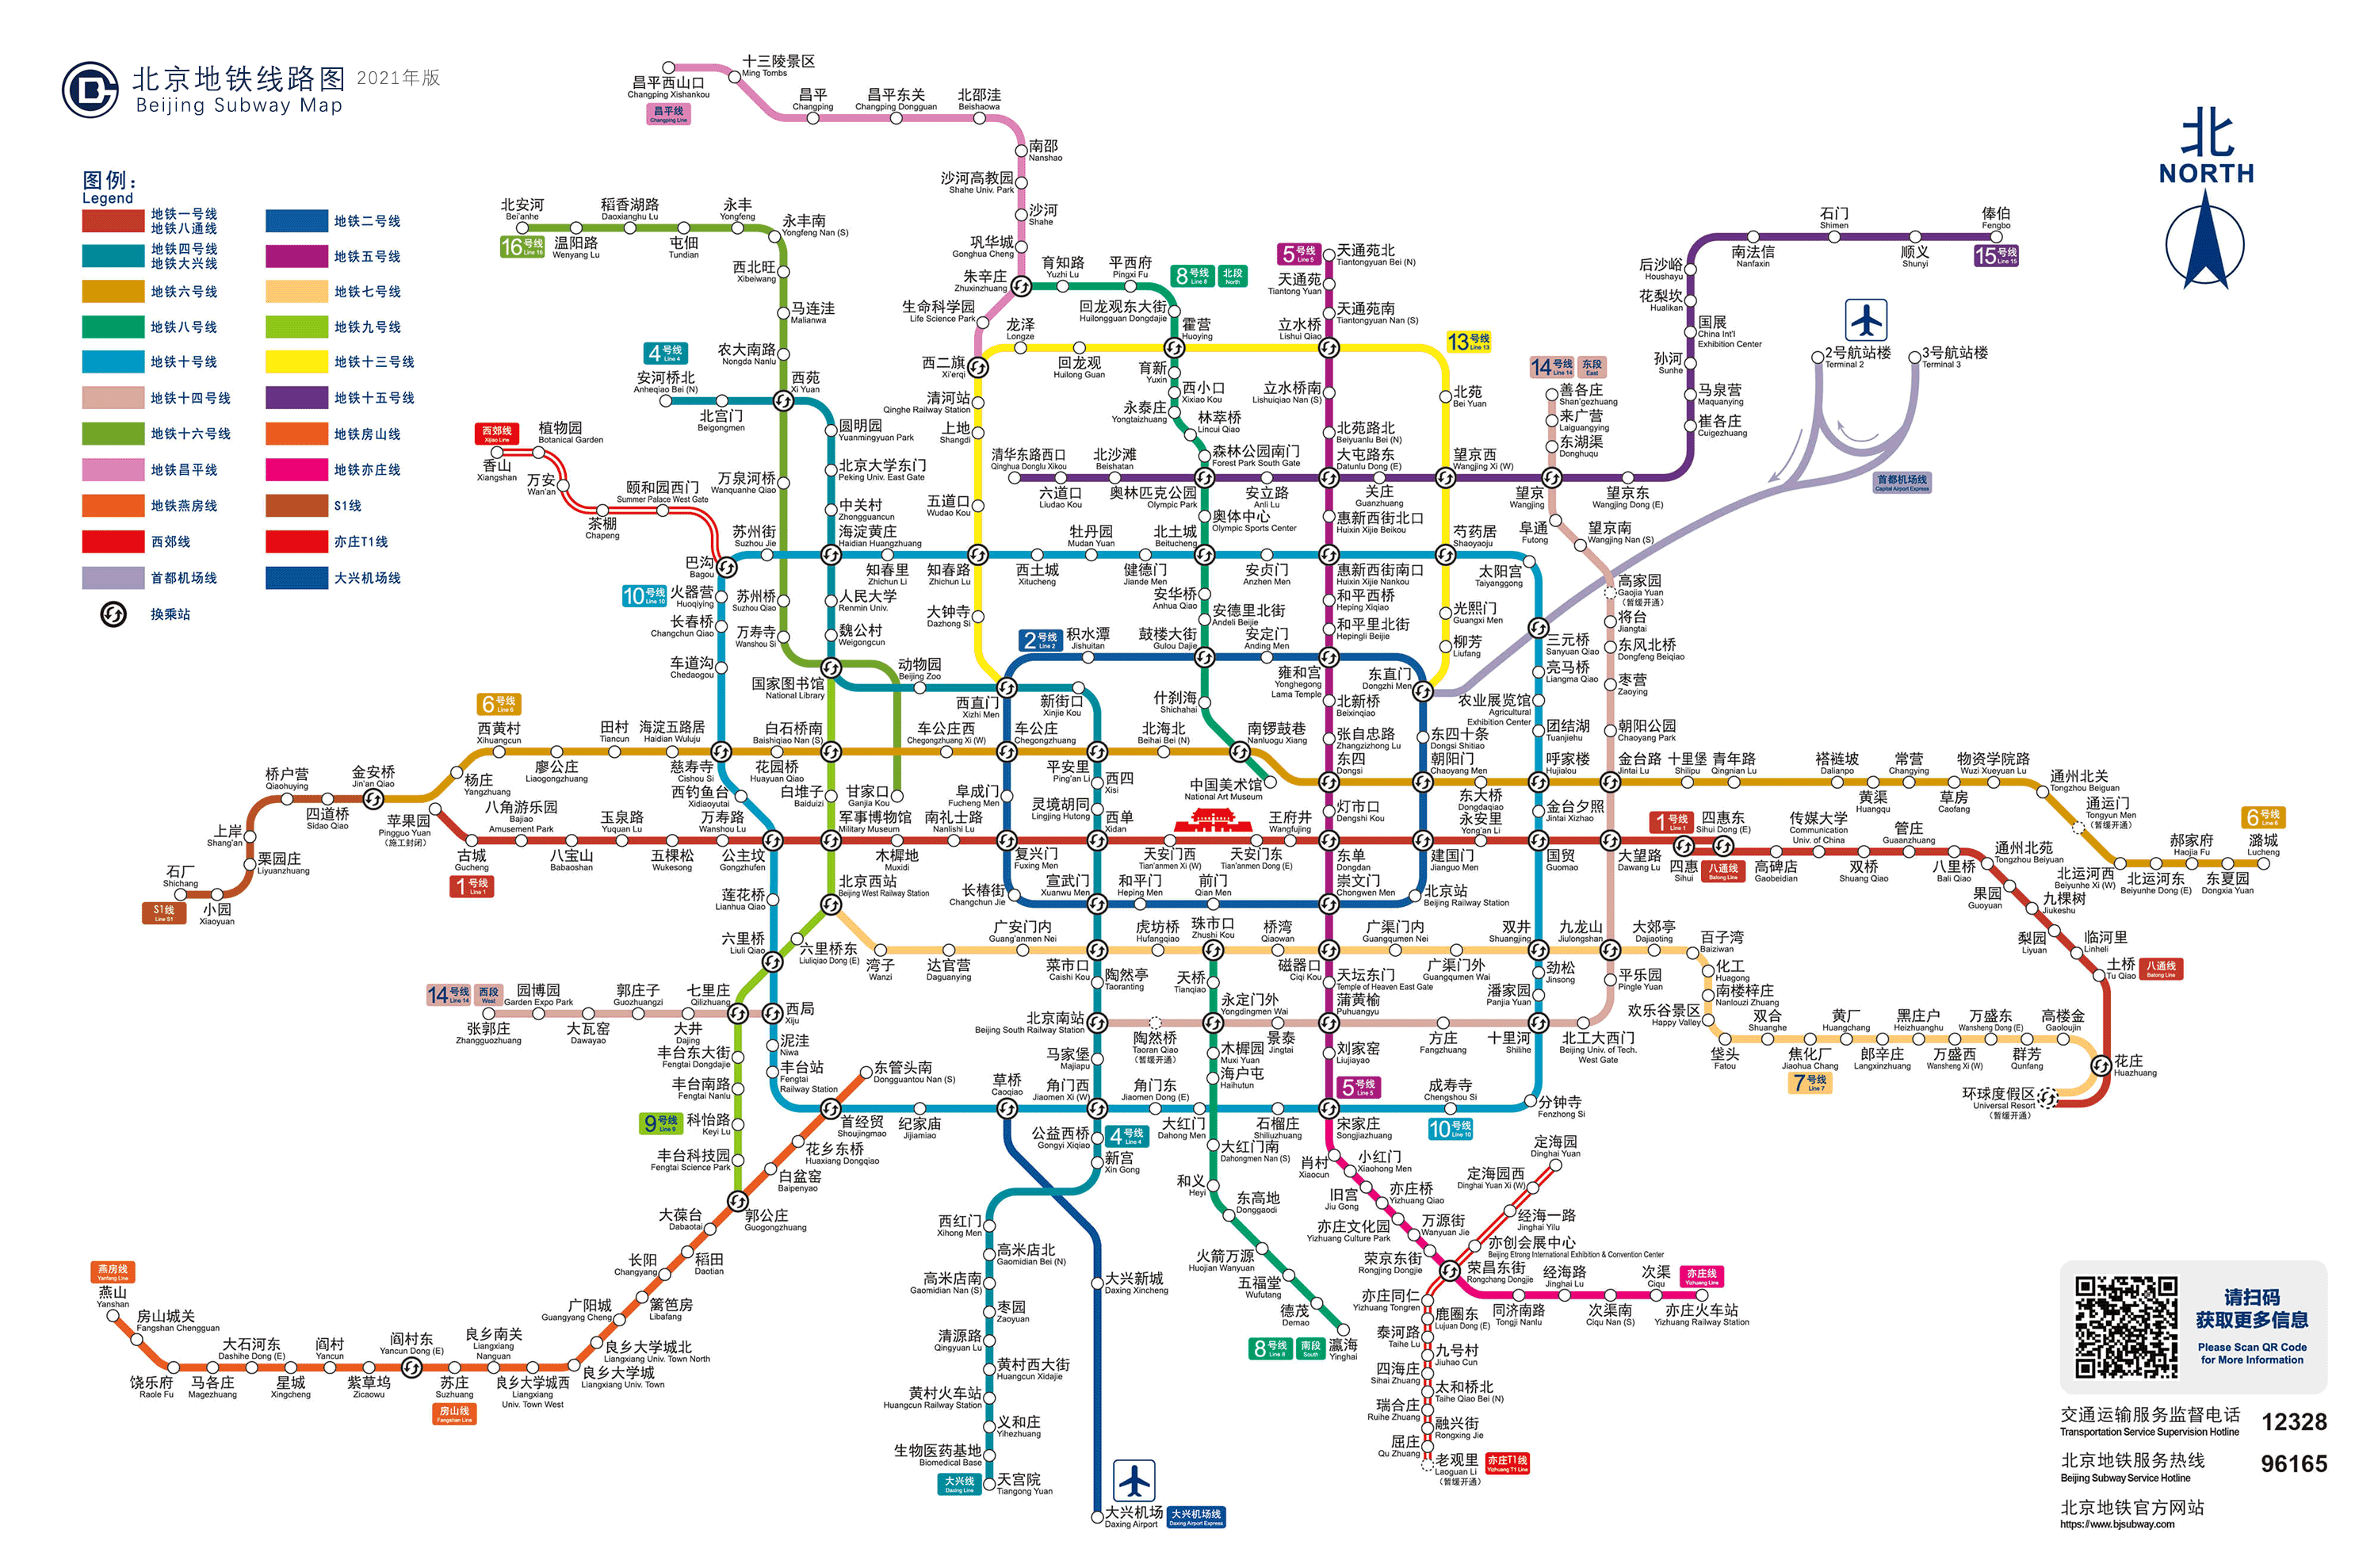 2020年底北京地铁16号线中段,房山线北延两条重要轨道交通线路开通